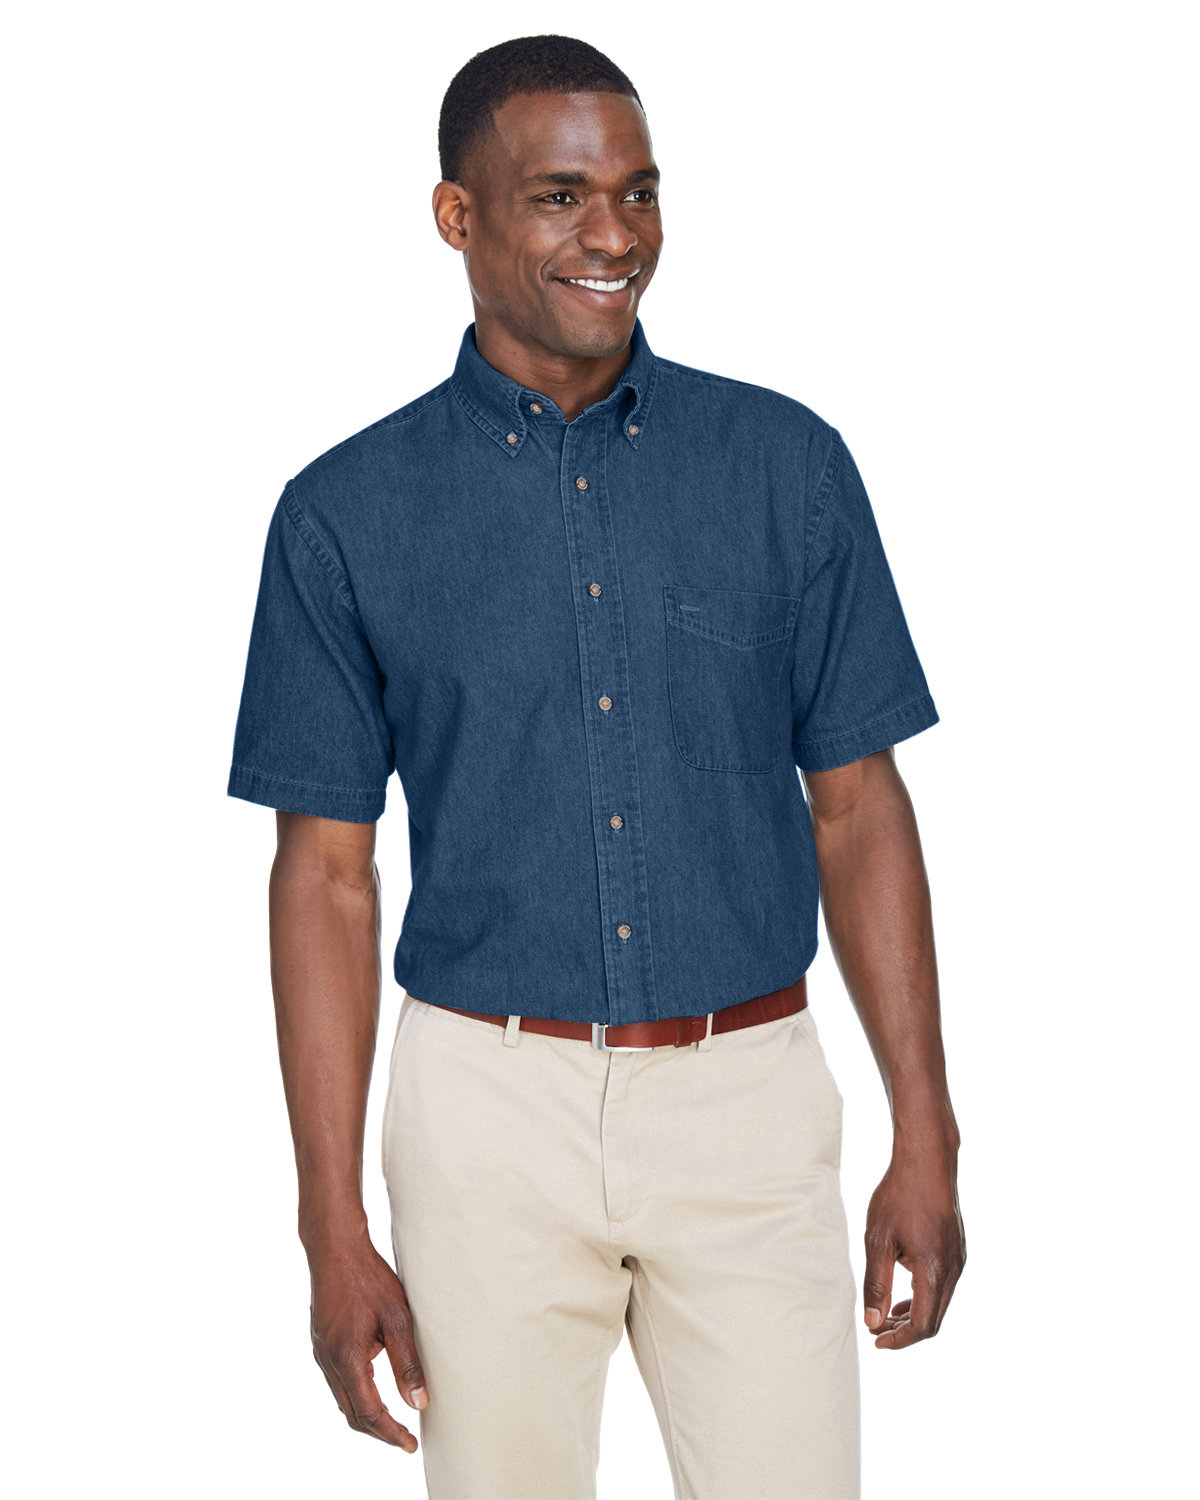 Men's 6.5 oz. Short-Sleeve Denim Shirt - M550S